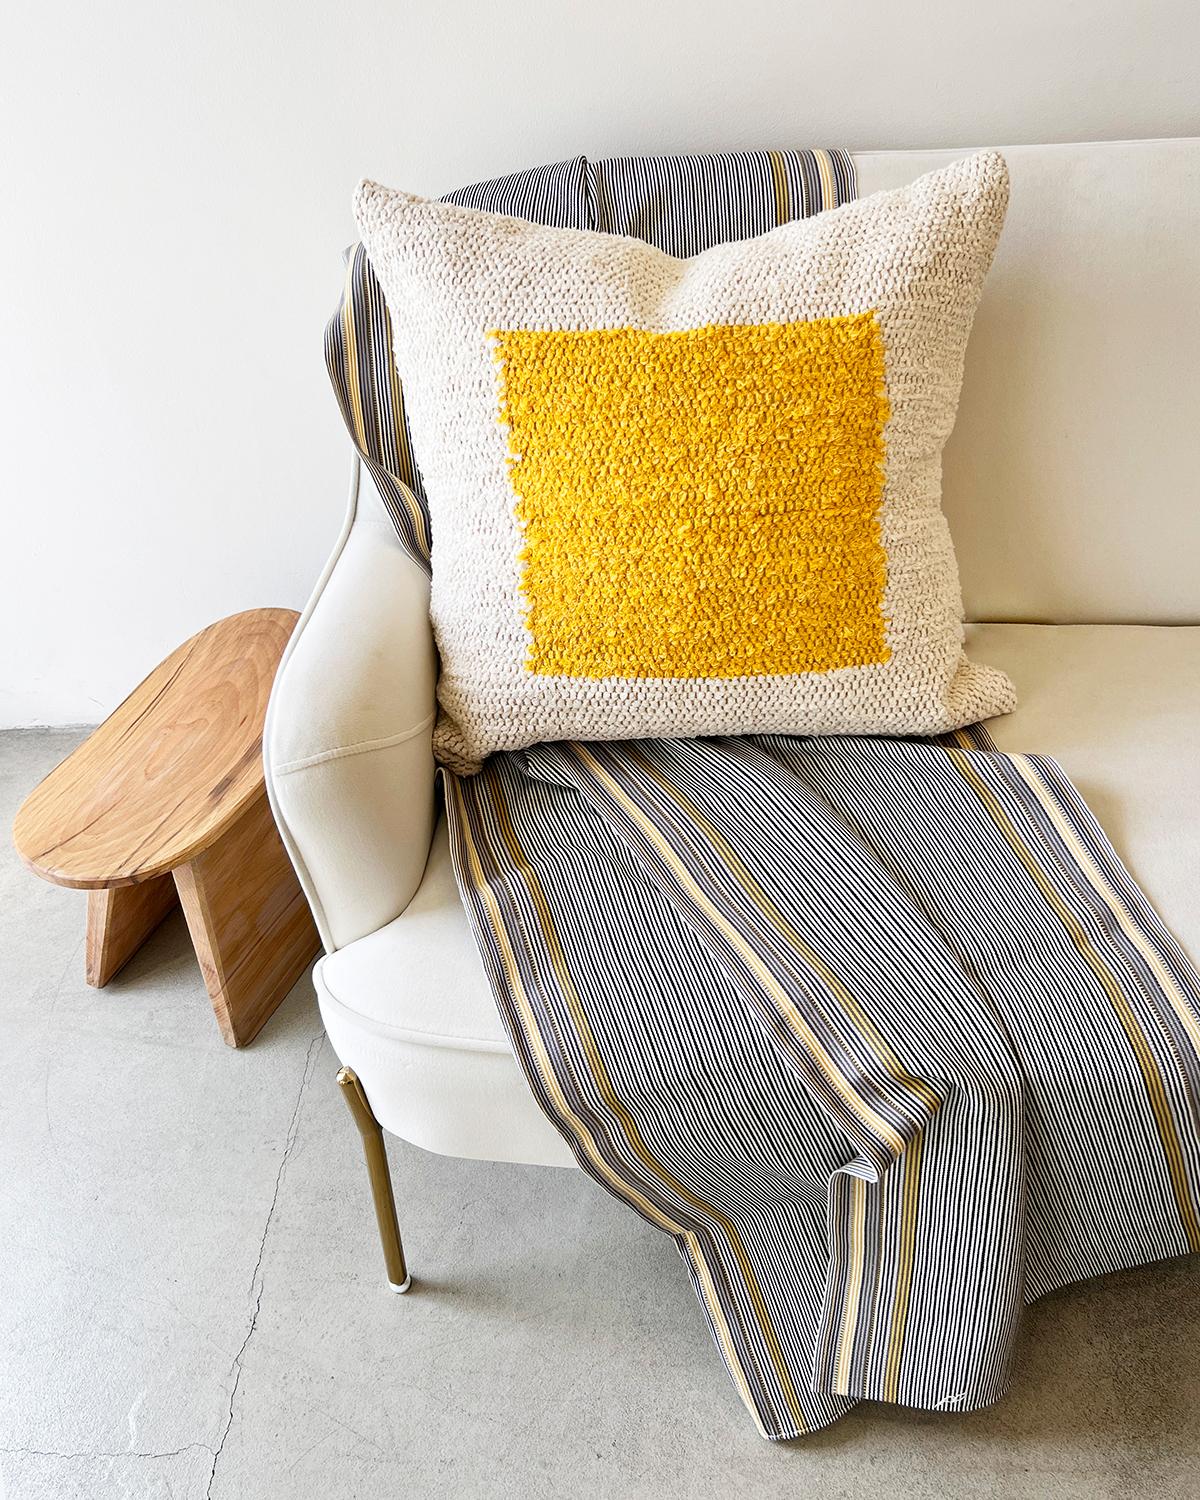 Ein geometrisch strukturiertes Kissen für Ihre Couch oder Ihr Bett. Dieses gelbe und cremefarbene Baumwollkissen ist aus handgewebter Baumwolle gefertigt und eignet sich perfekt für einen stark frequentierten Bereich wie die Wohnzimmercouch. Legen